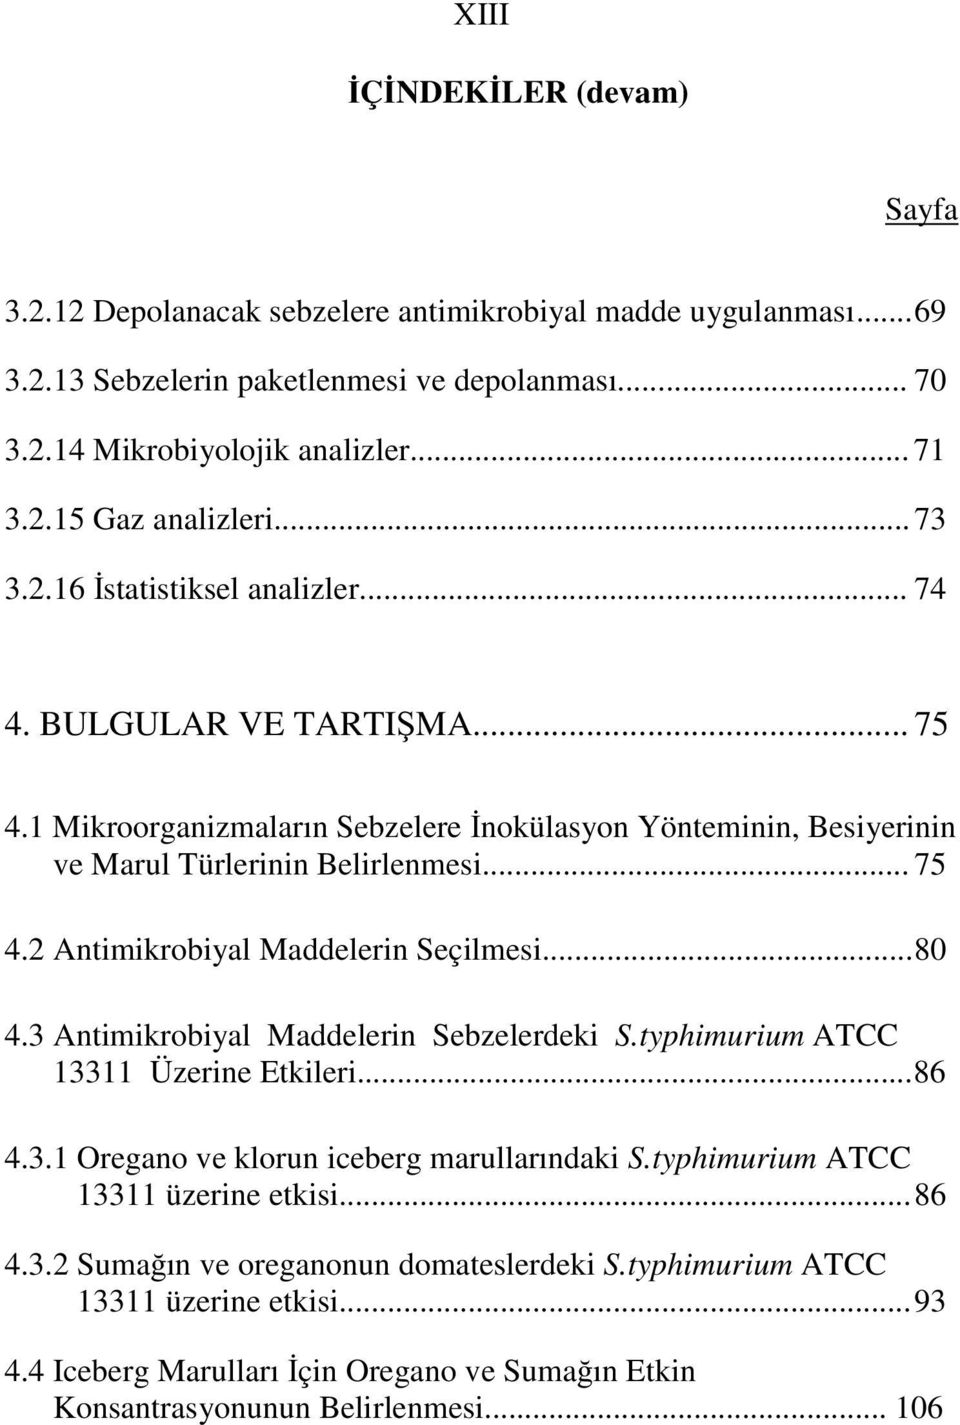 .. 80 4.3 Antimikrobiyal Maddelerin Sebzelerdeki S.typhimurium ATCC 13311 Üzerine Etkileri... 86 4.3.1 Oregano ve klorun iceberg marullarındaki S.typhimurium ATCC 13311 üzerine etkisi... 86 4.3.2 Suma ın ve oreganonun domateslerdeki S.